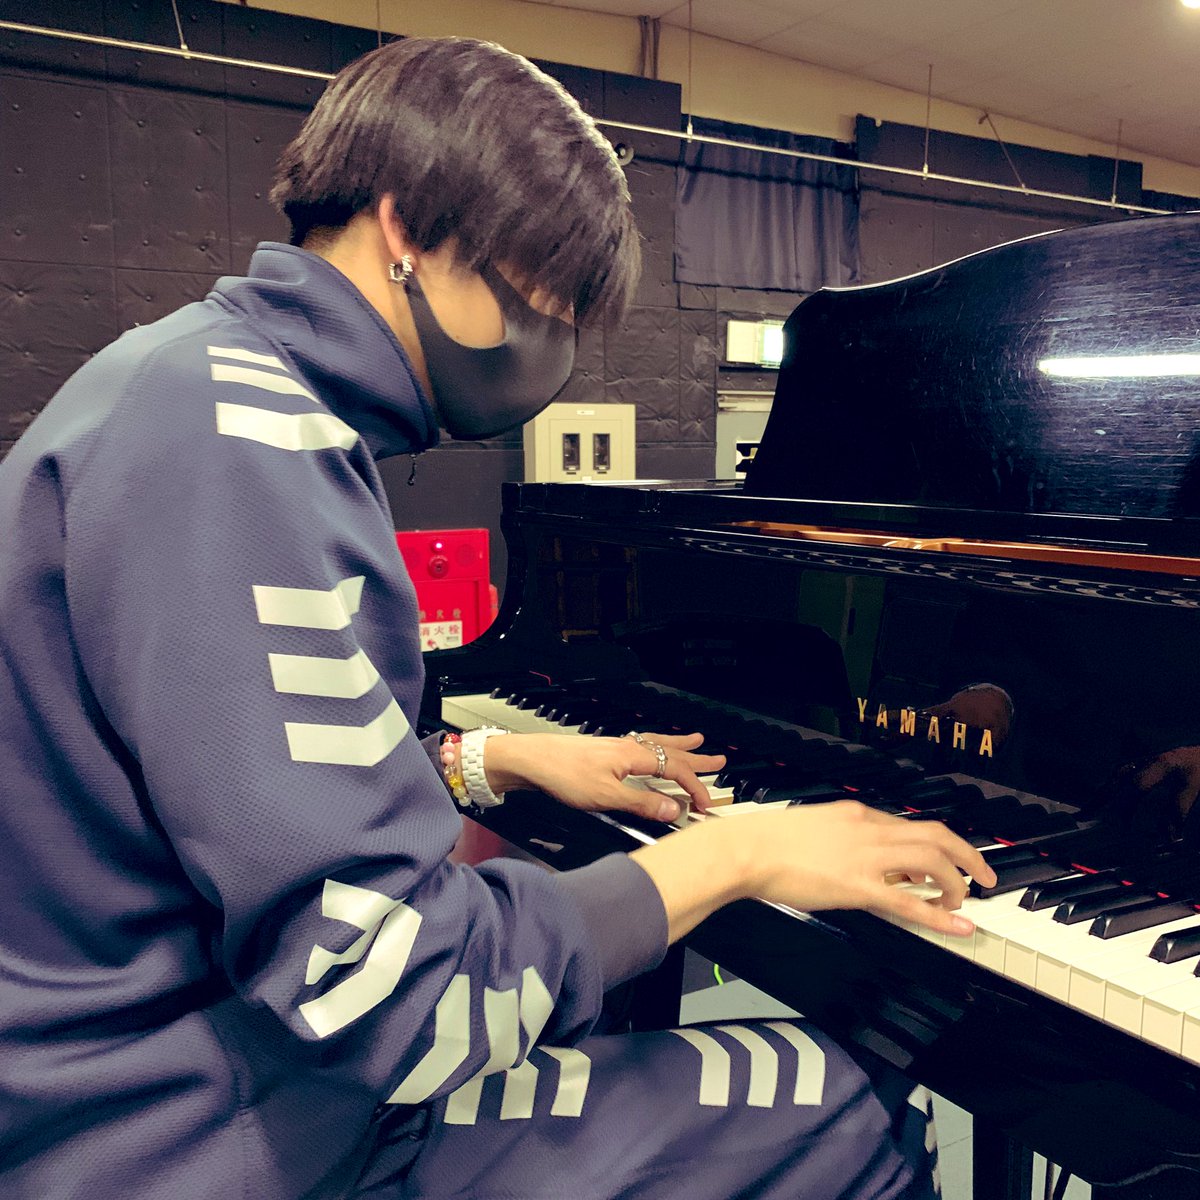 تويتر 赤澤遼太郎 على تويتر ピアノも弾けるなんて なんてかっこいいお兄さん ジャスティス T Co P9e5rqnz2f